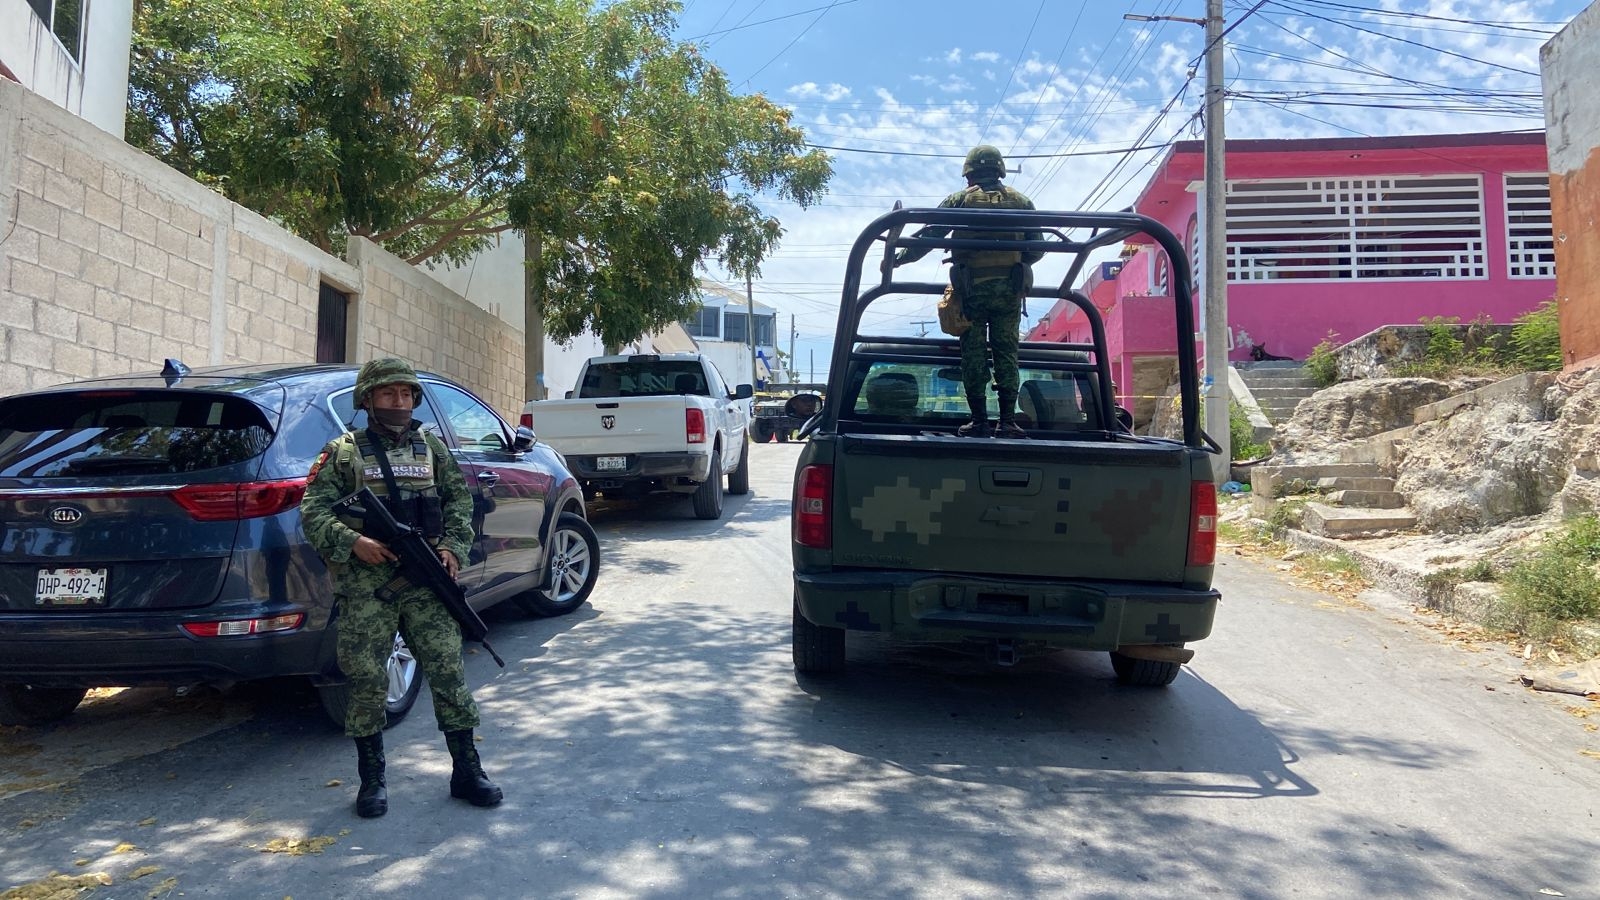 Hallan una granada dentro de una bolsa en Campeche: EN VIVO